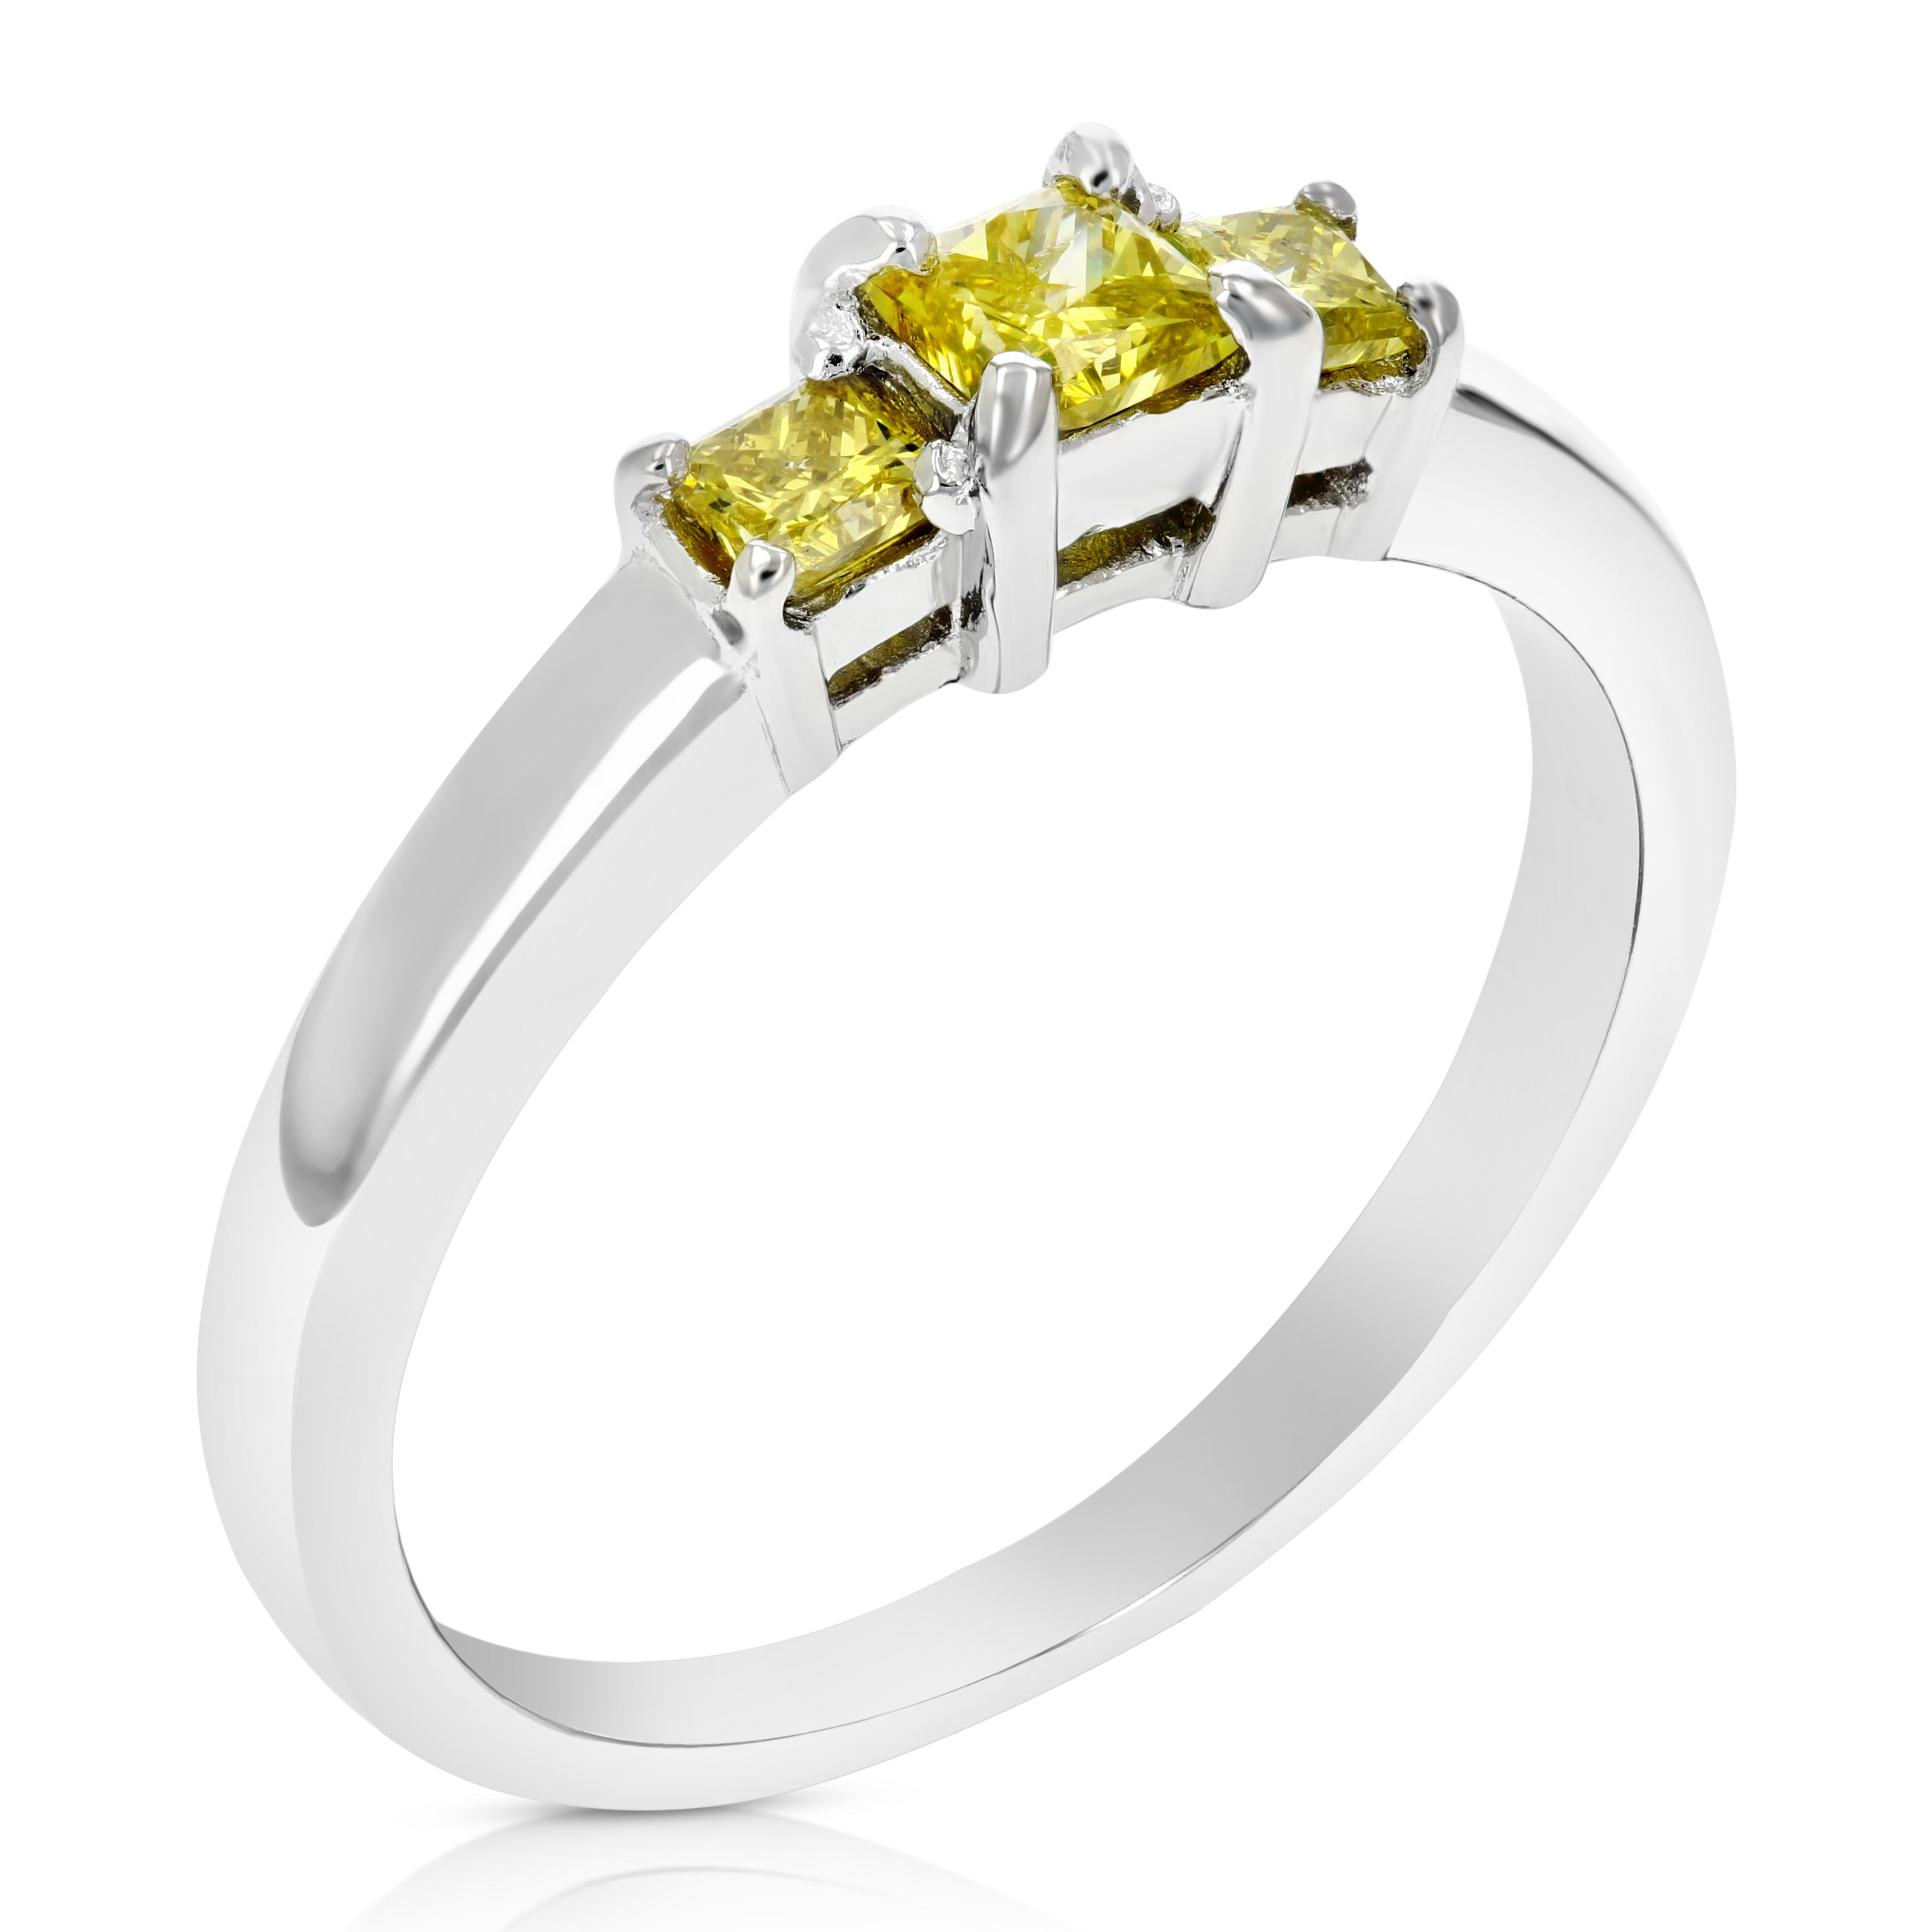 Three Princess Yellow Diamond Ring